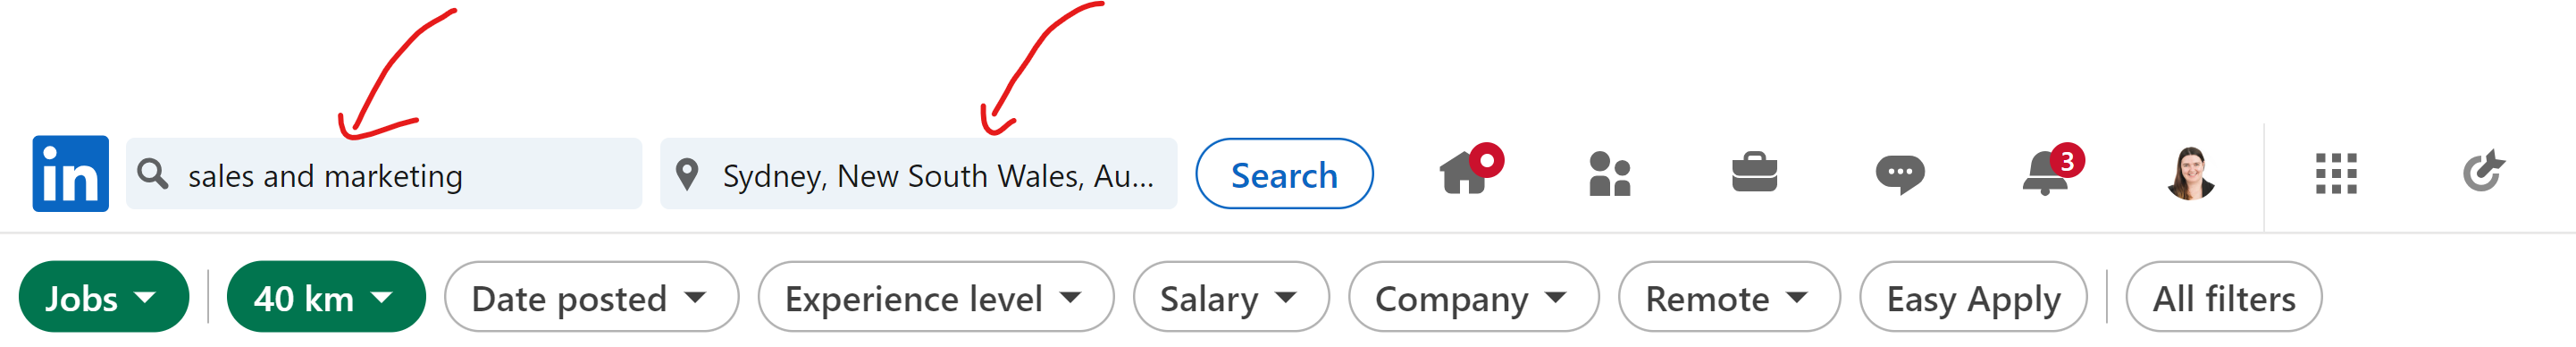 LinkedIn job search bar